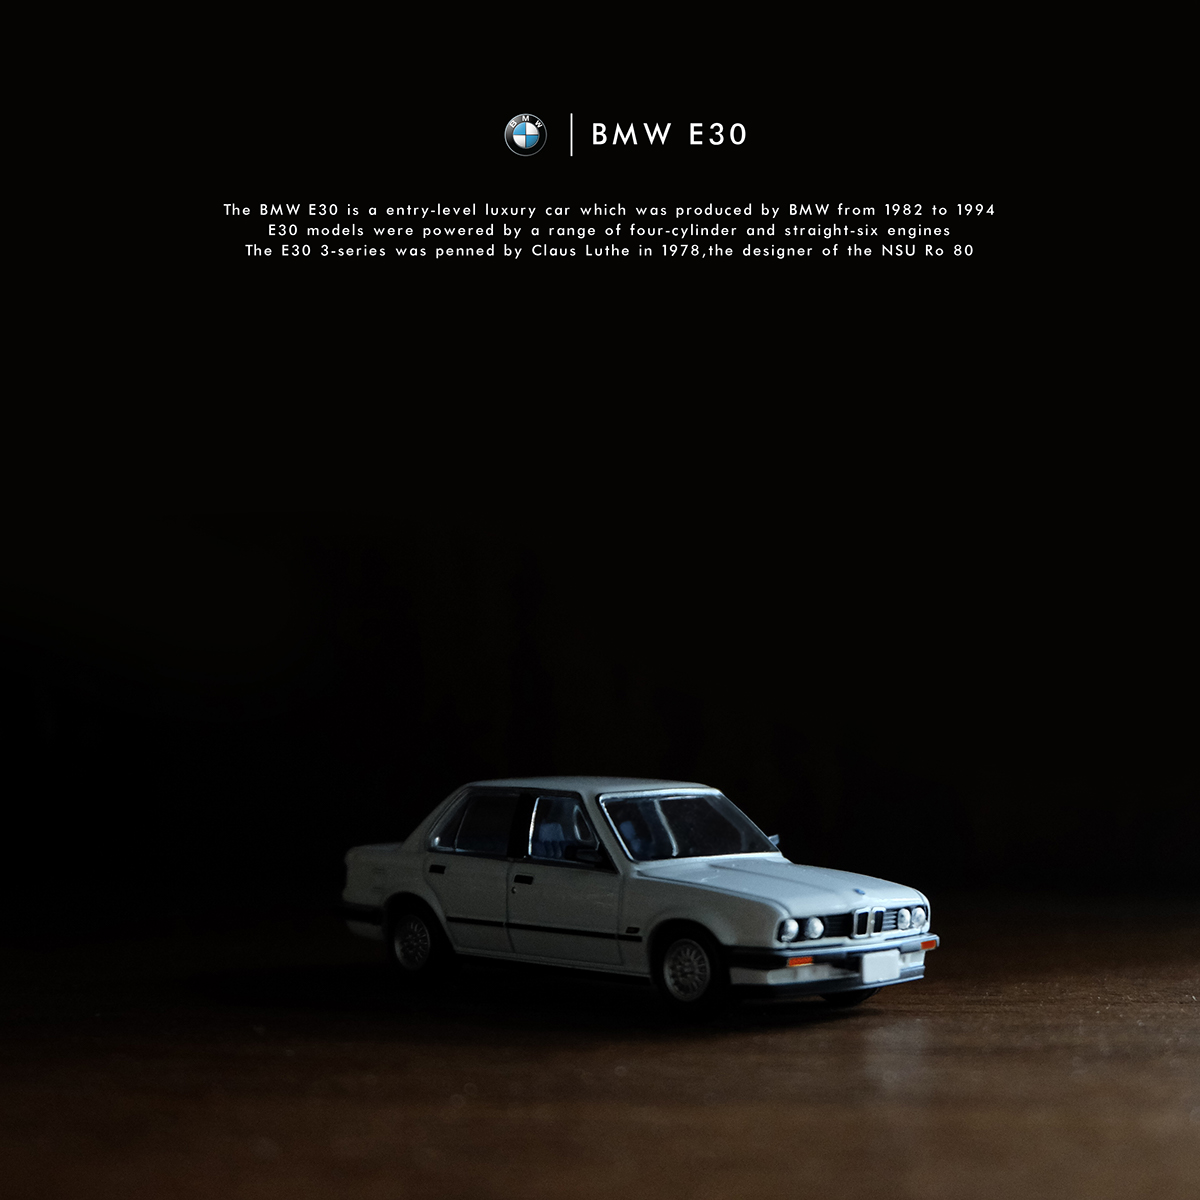 diecast BMW e30 car Tomica editorial branding 